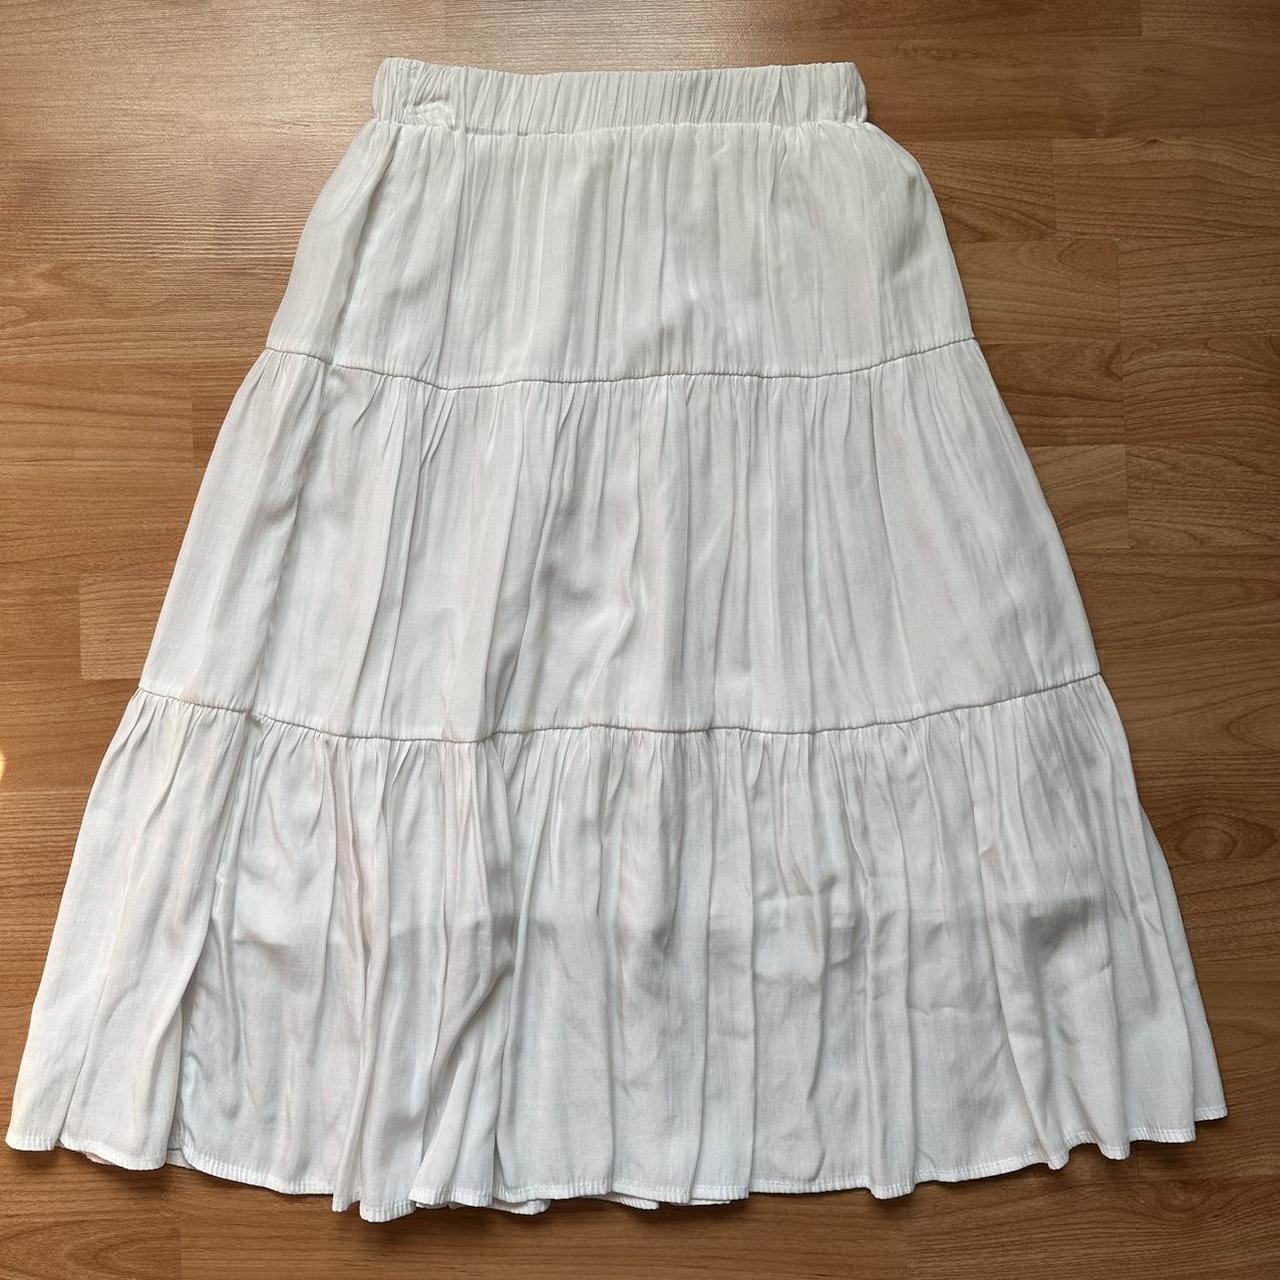 White Midi Skirt Size: S Cute for fairy grunge type... - Depop